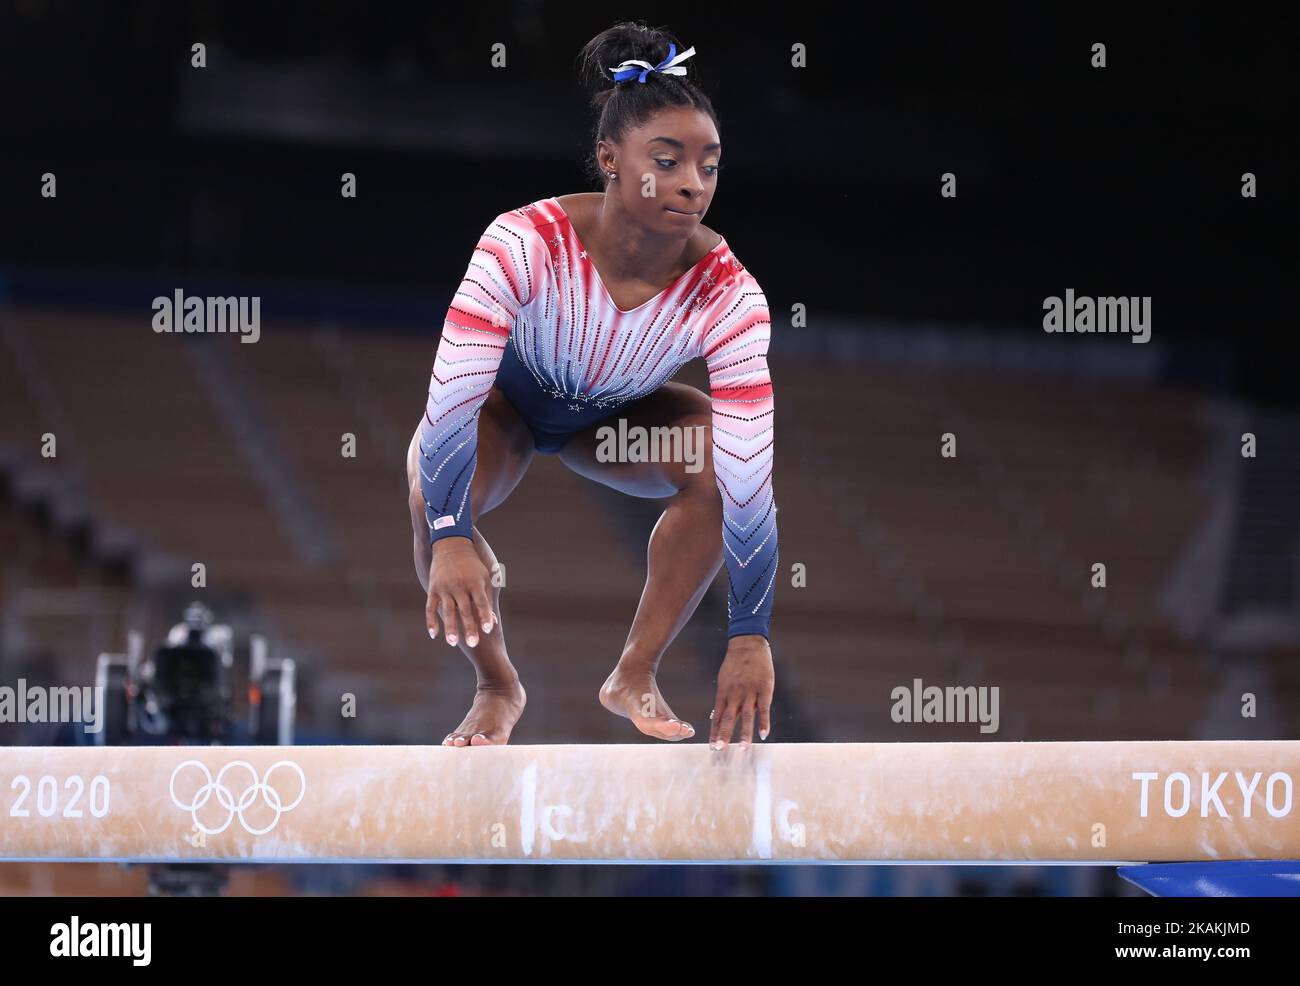 03rd AGOSTO 2021 - TOKYO, GIAPPONE: Simone BILES degli Stati Uniti si esibisce al fascio di equilibrio femminile durante le finali degli apparati di ginnastica artistica ai Giochi Olimpici di Tokyo 2020 (Foto di Mickael Chavet/RX) Foto Stock